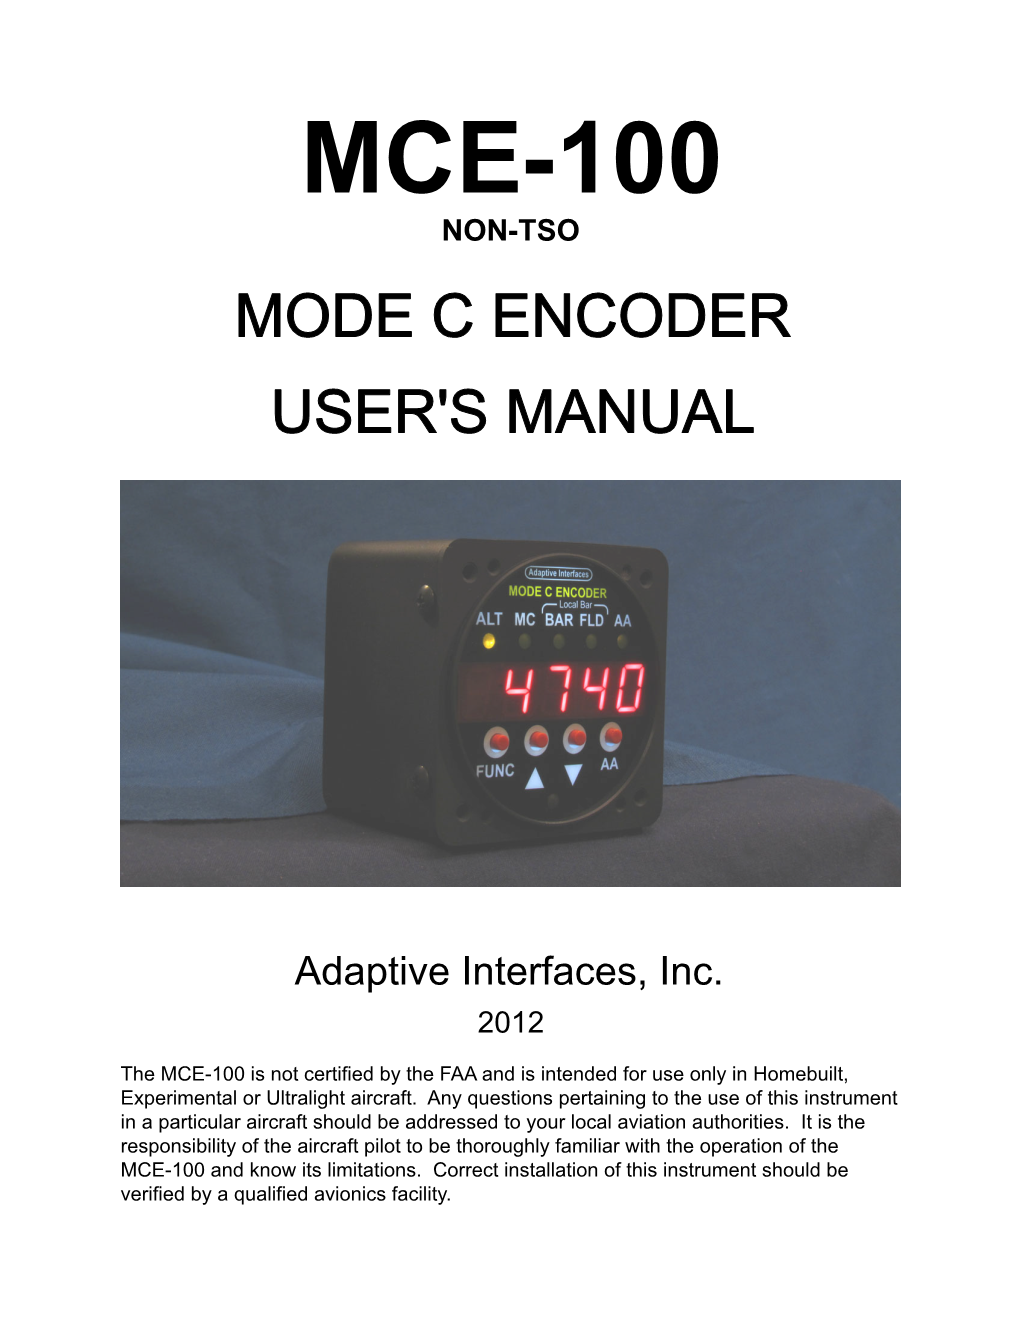 Mce-100 Non-Tso Mode C Encoder User's Manual